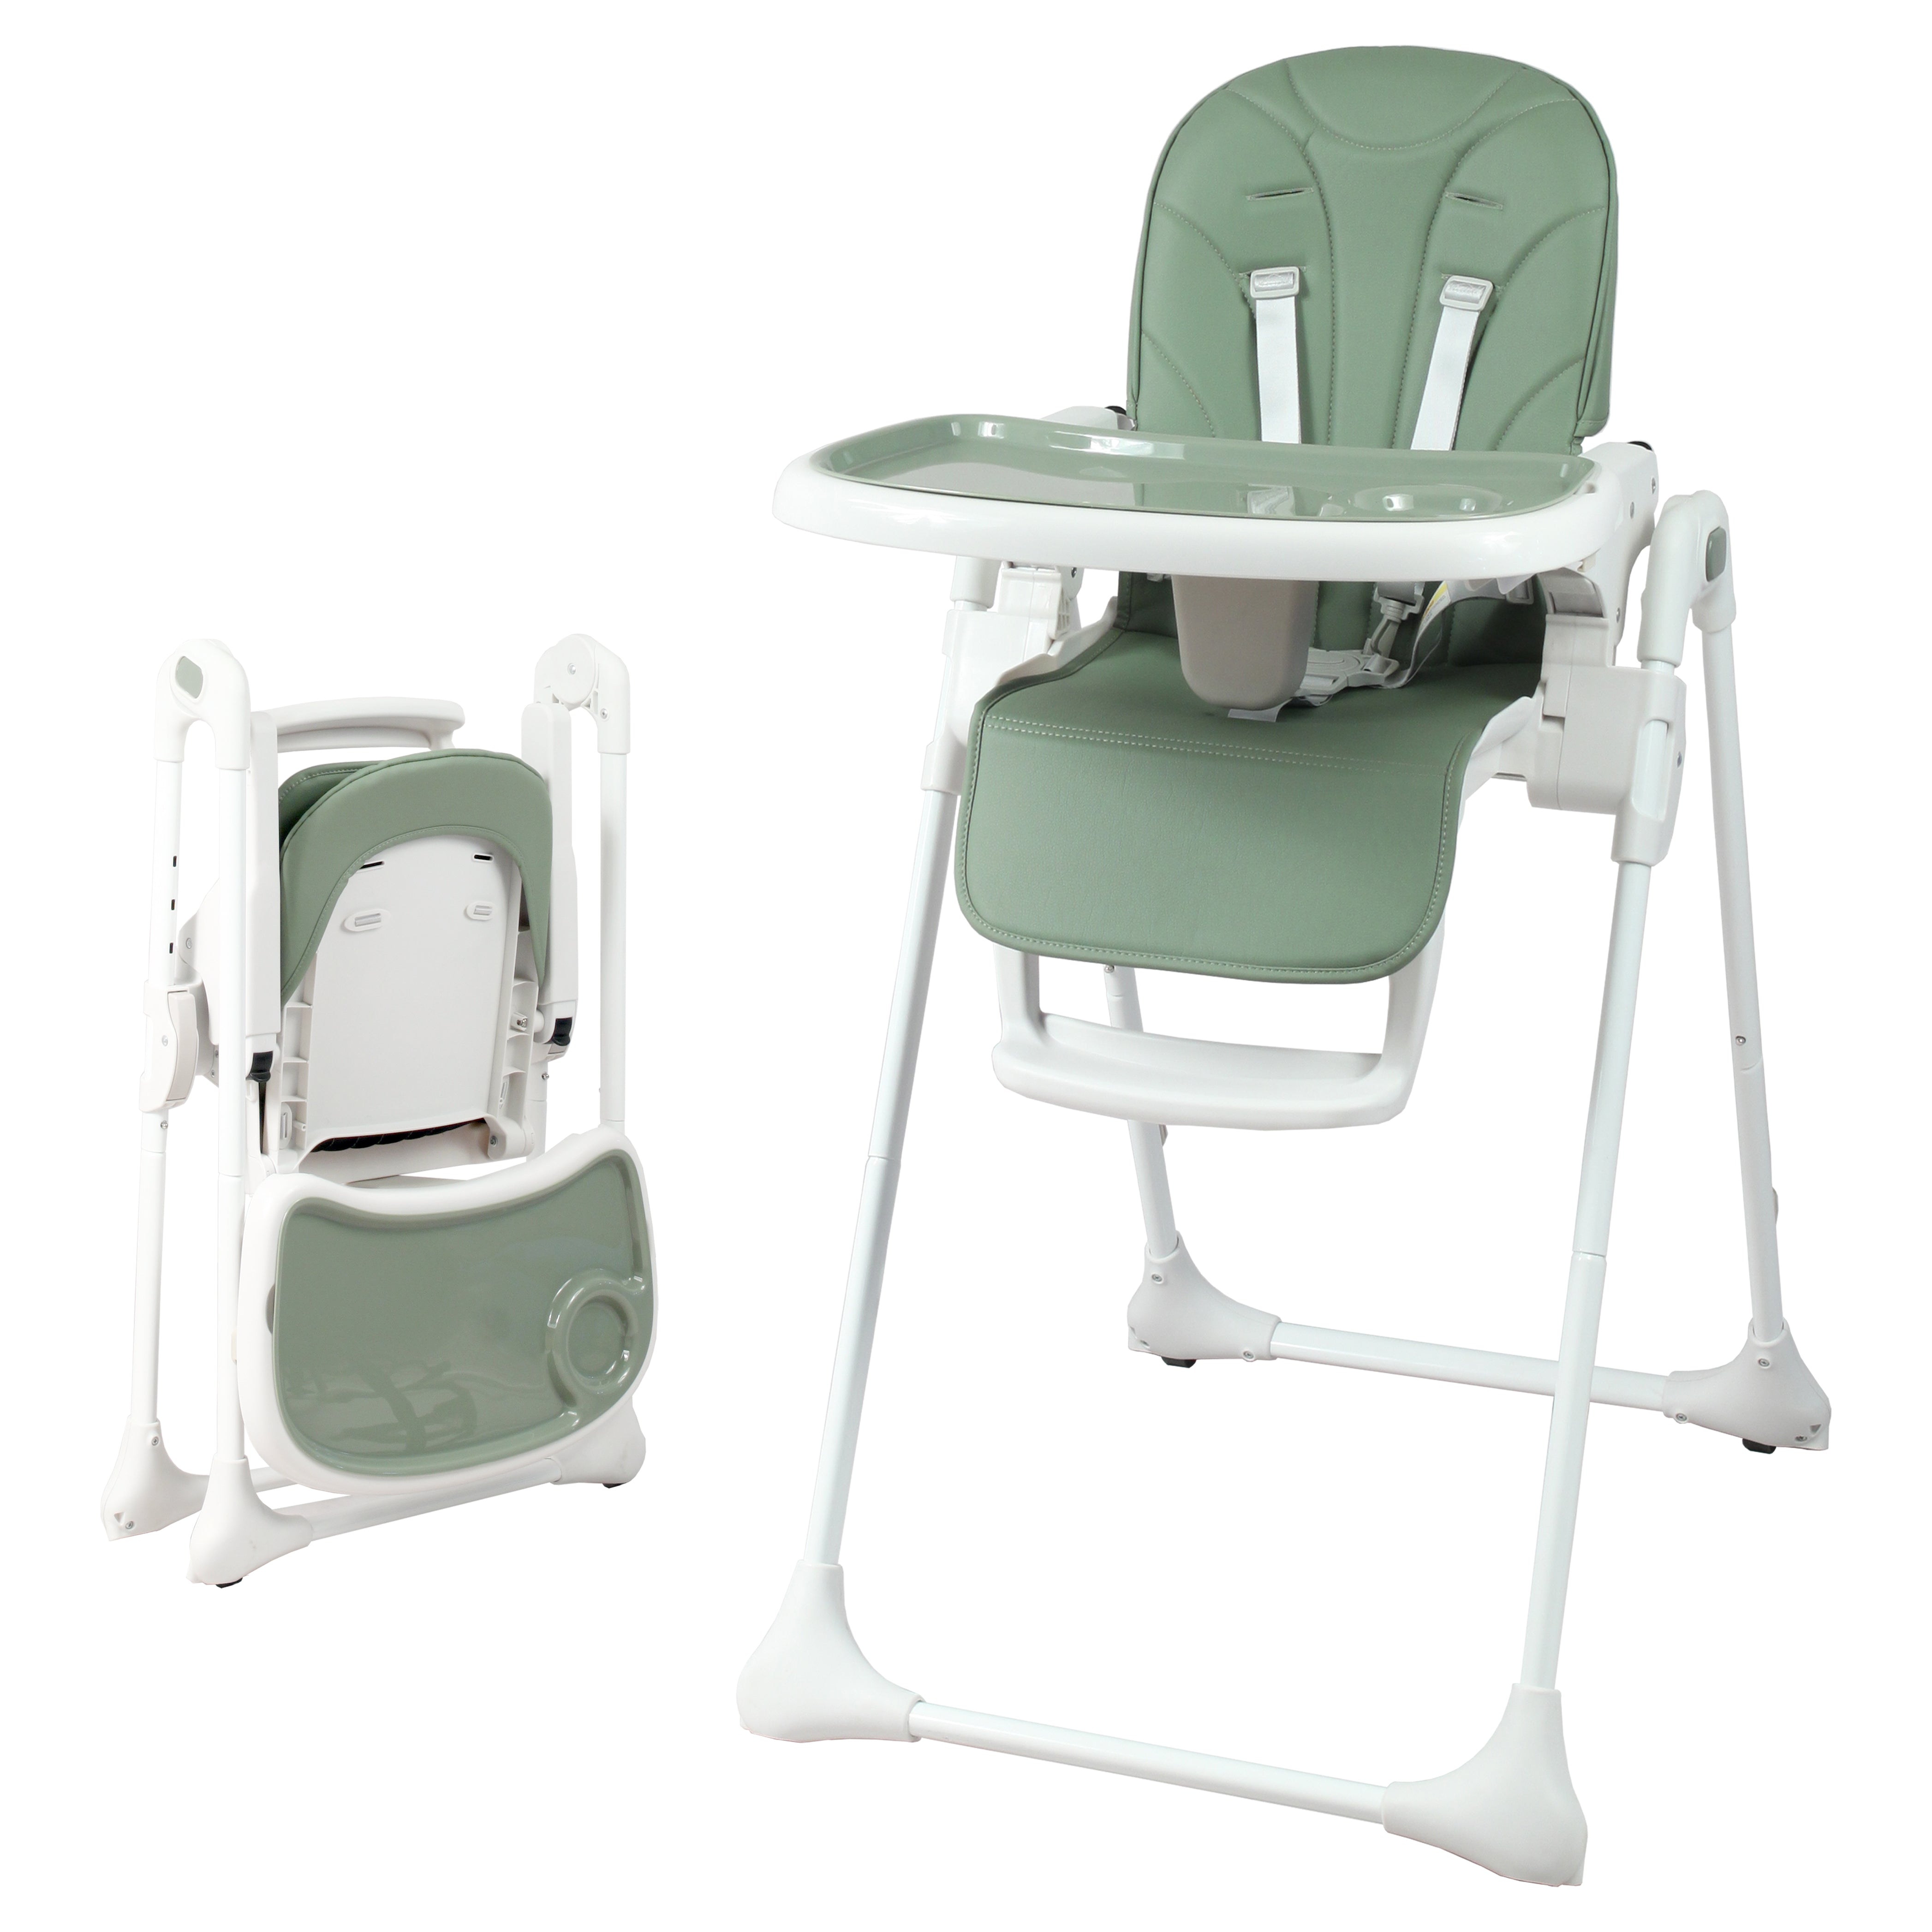 Chaise haute bébé évolutive compacte Bambisol – Bambisol Puériculture